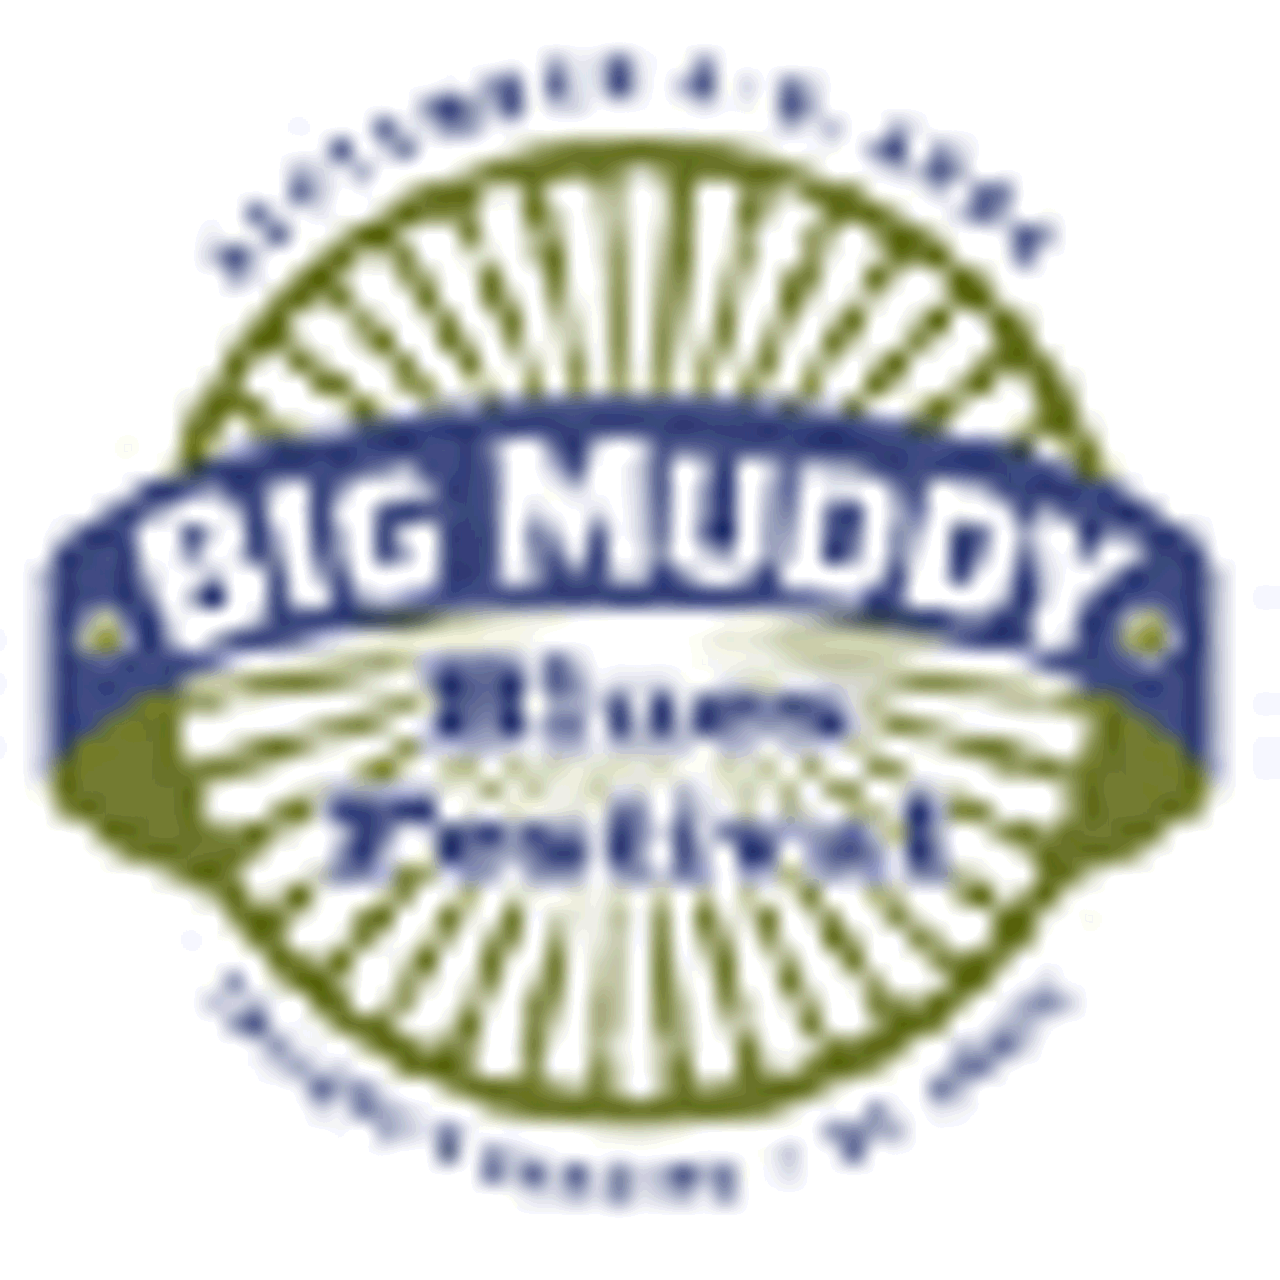 Budweiser Big Muddy Blues Festival